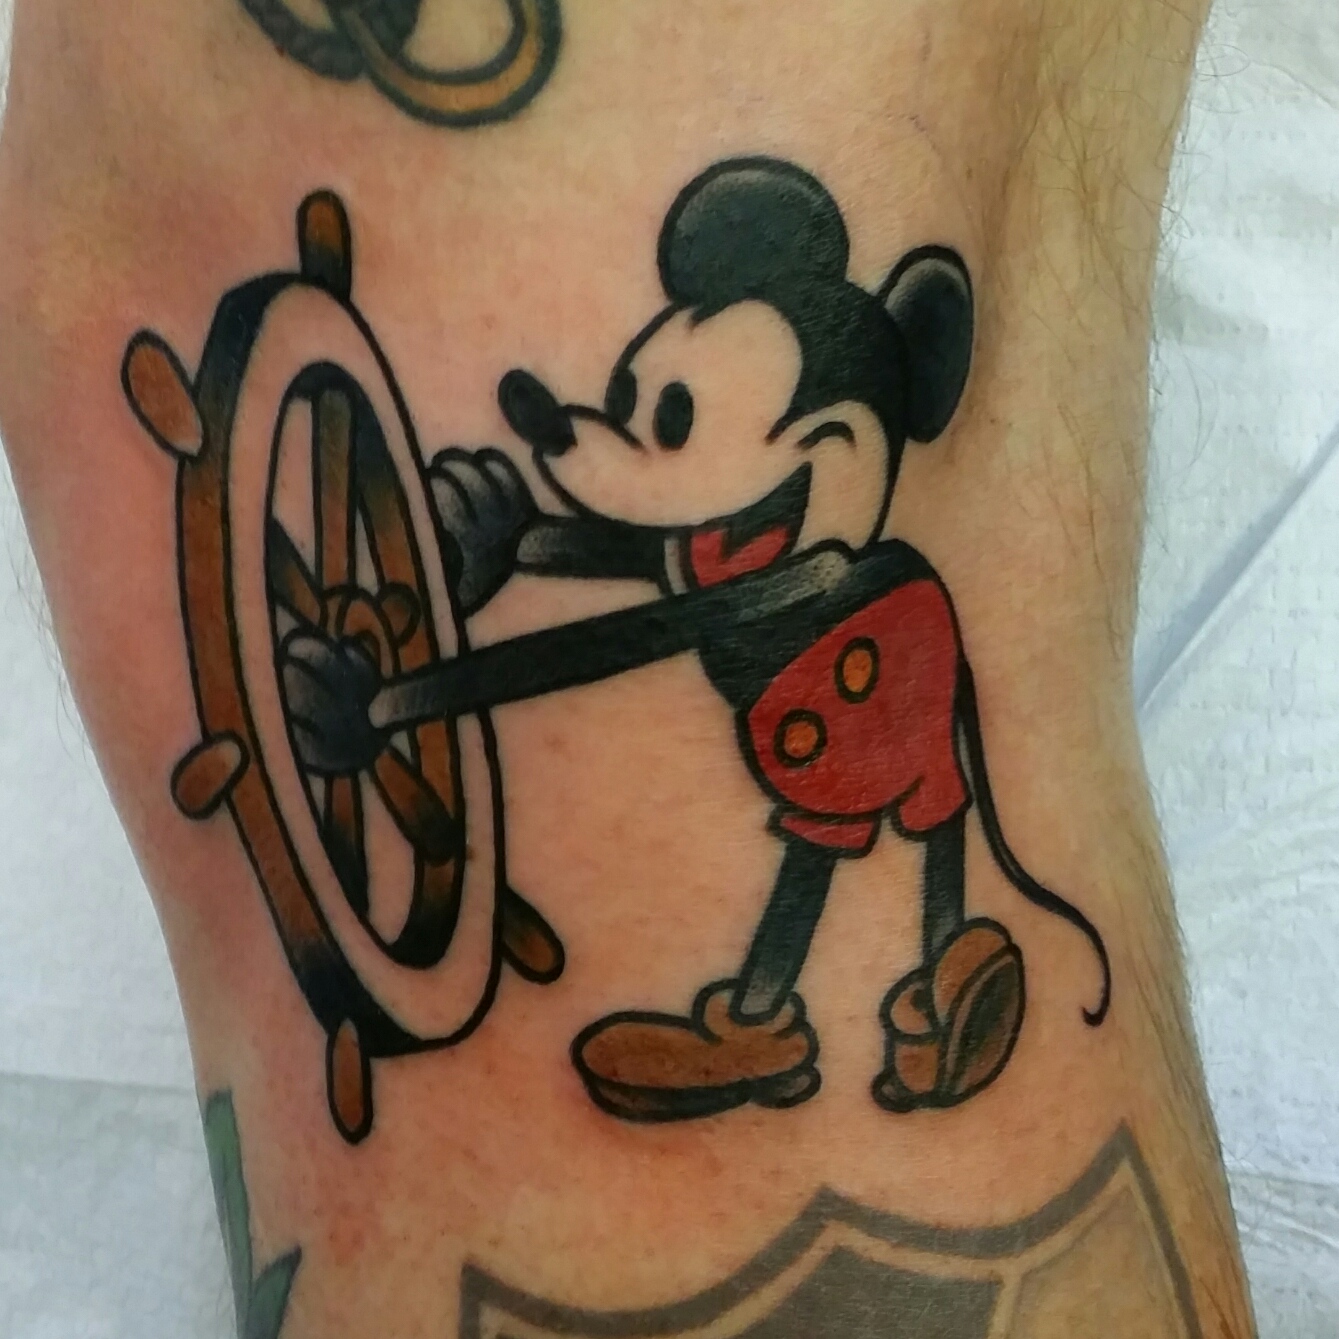 Mickey Mouse Kingdom Hearts tattoo by AntoniettaArnoneArts on DeviantArt